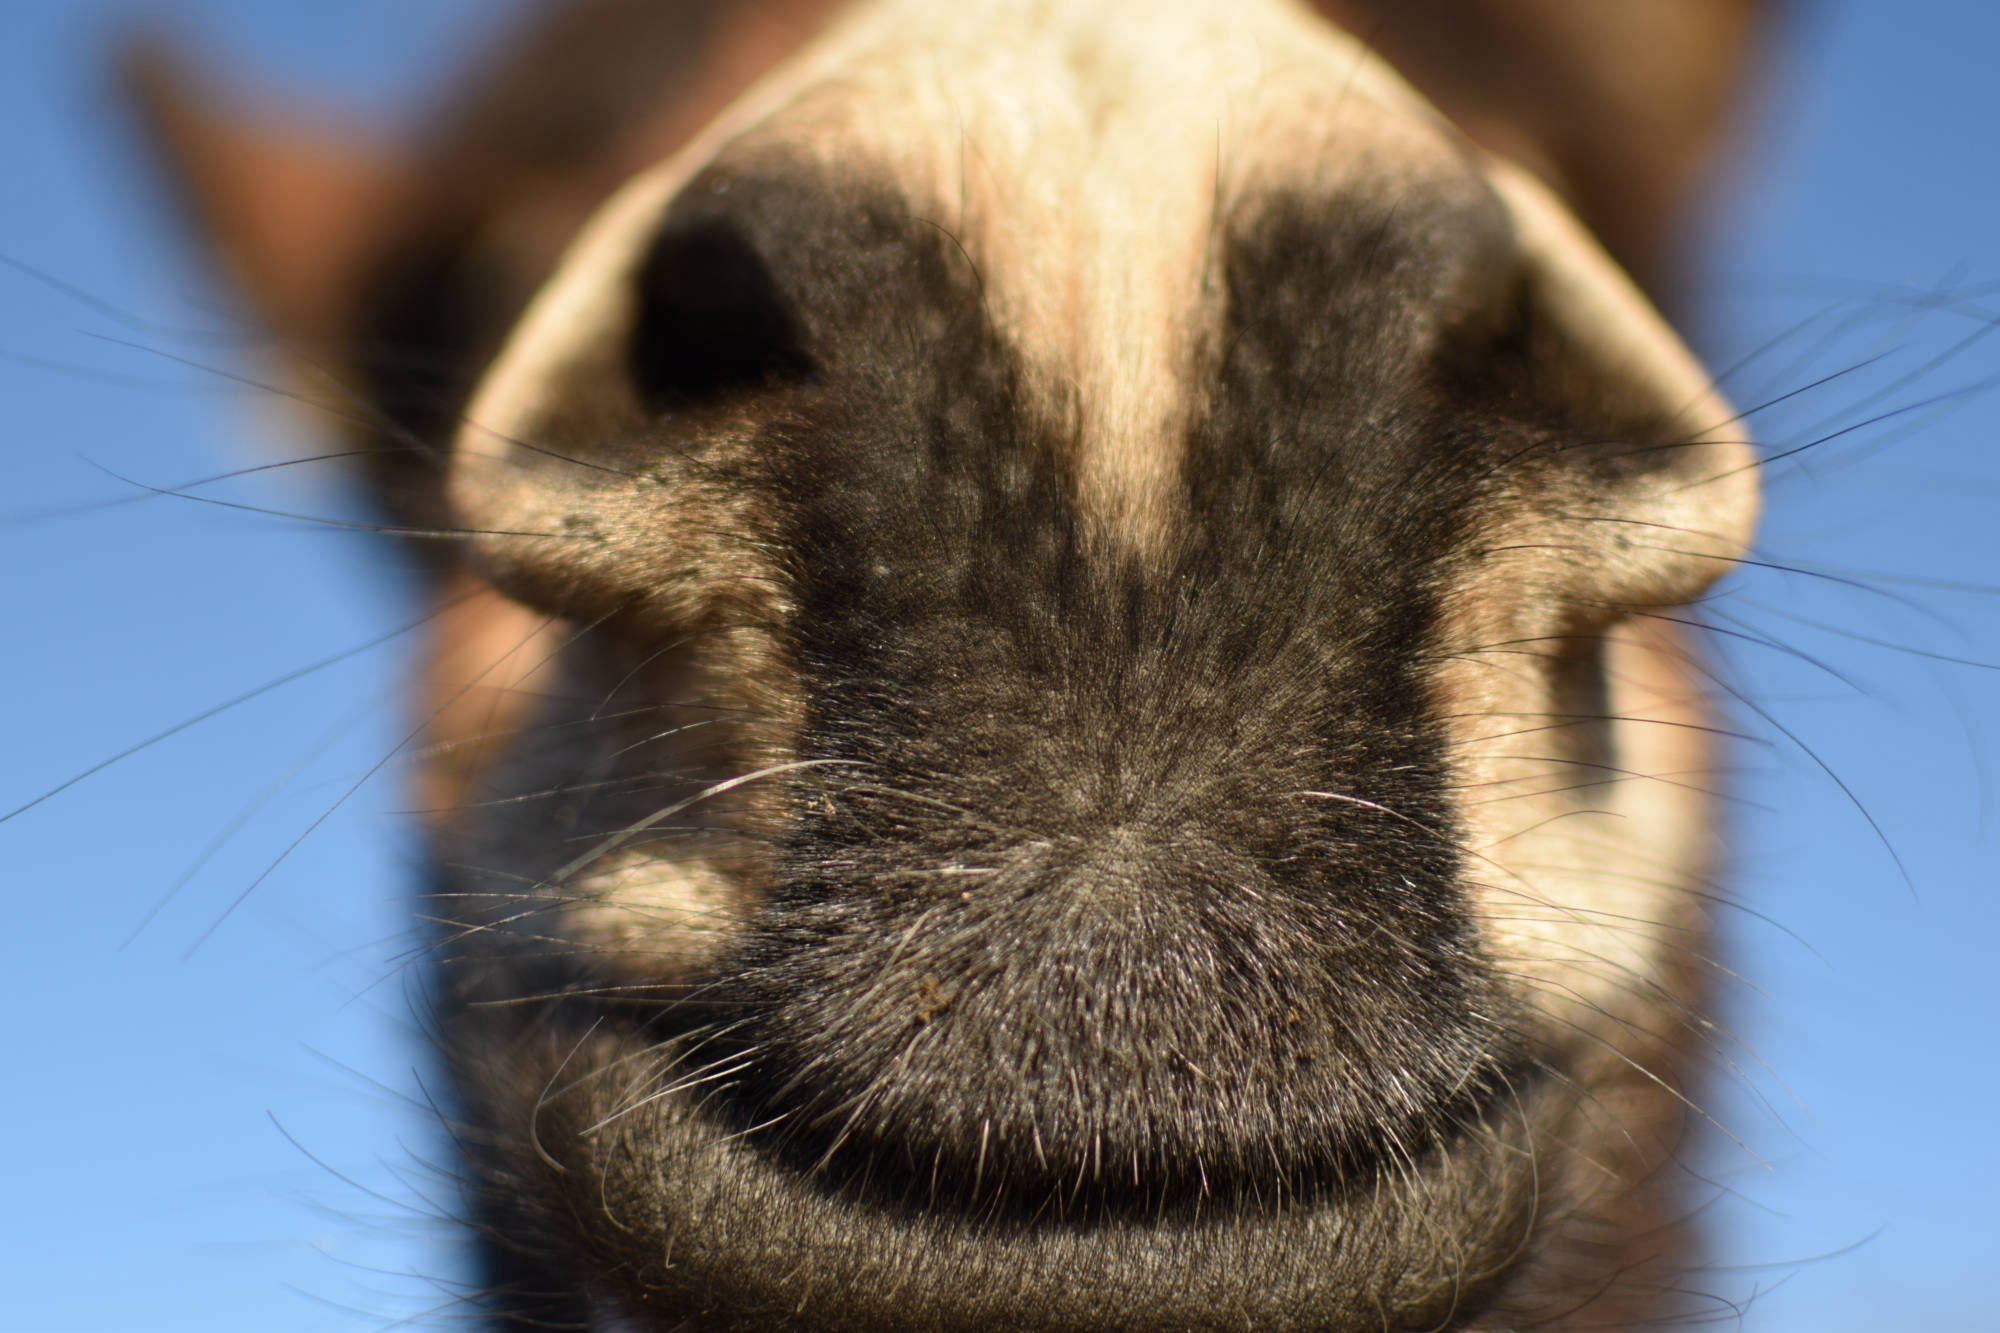 De neus van een ezel van dichtbij